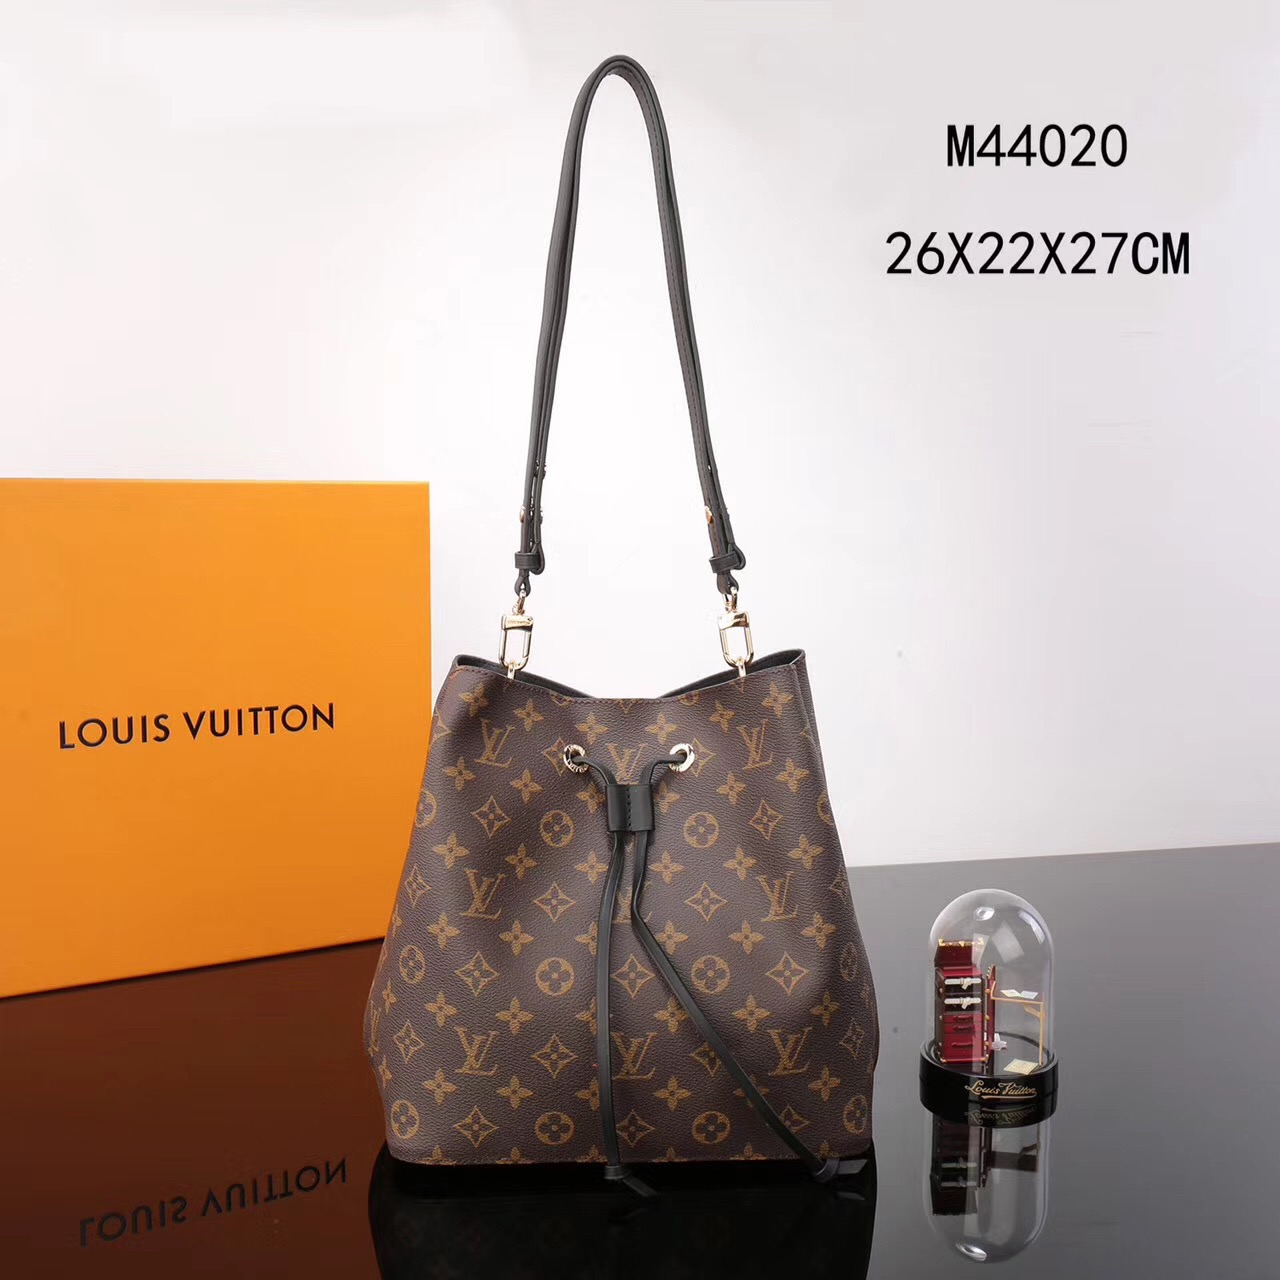 LV Louis Vuitton M44020 bags Monogram NEONOE Handbags Black